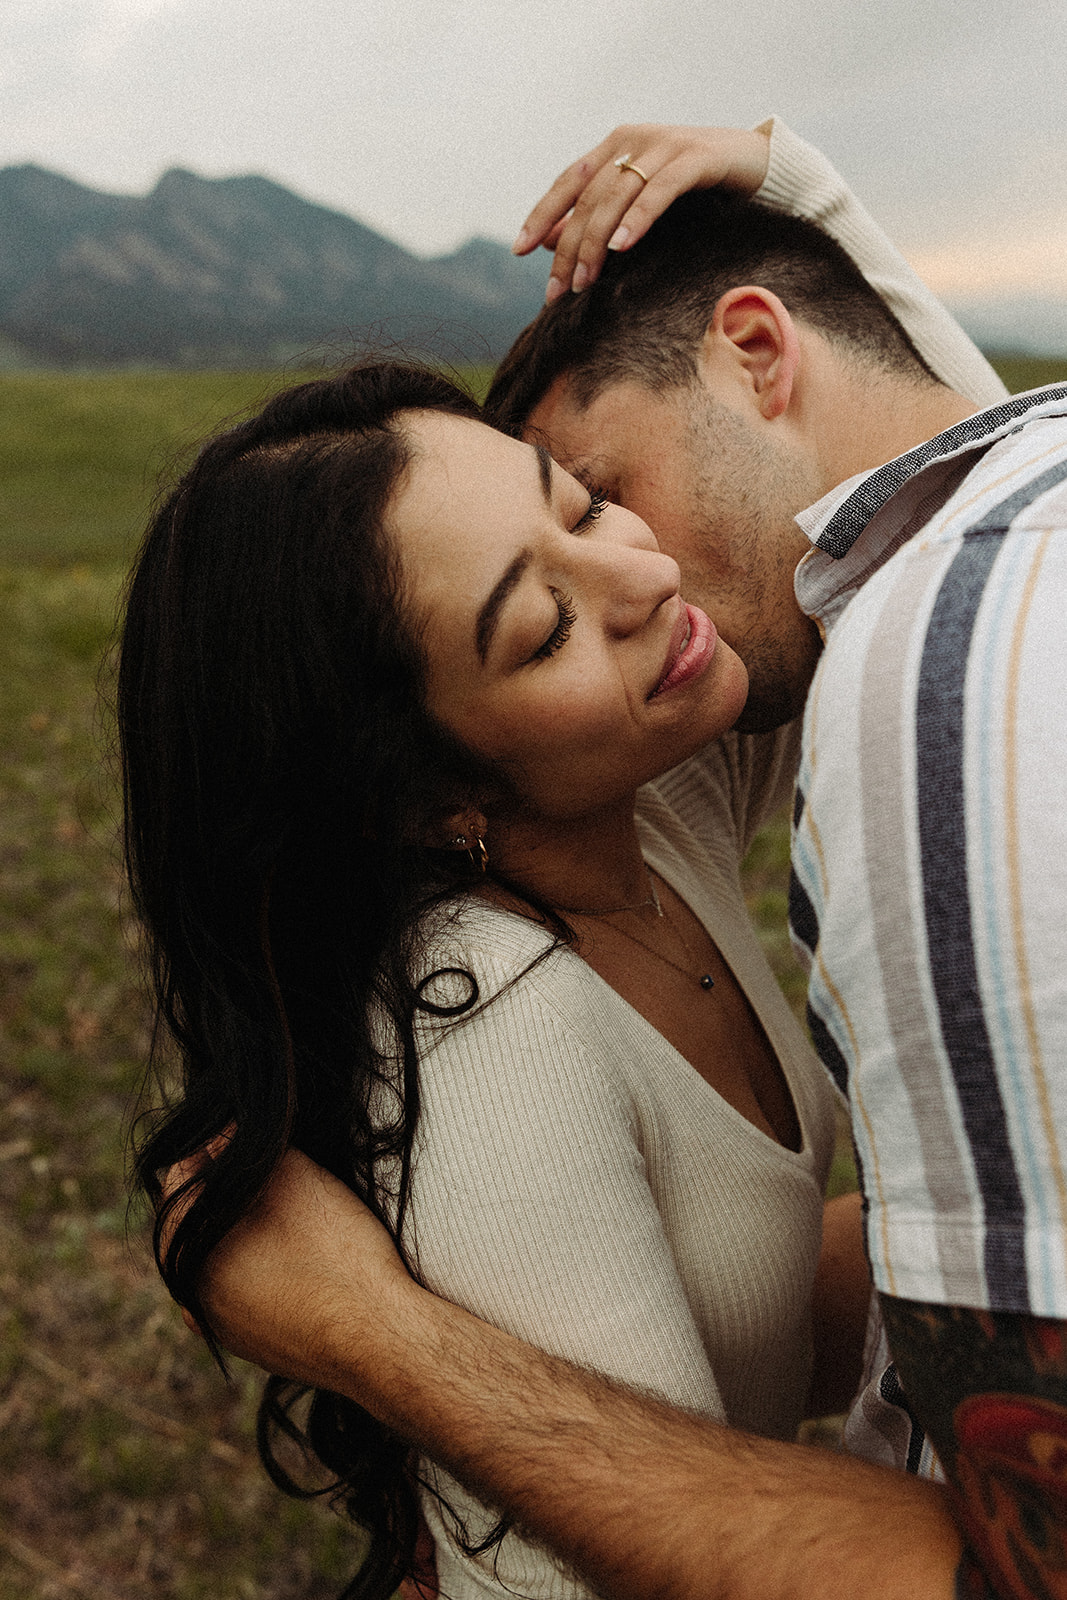 A man kissing a woman's neck